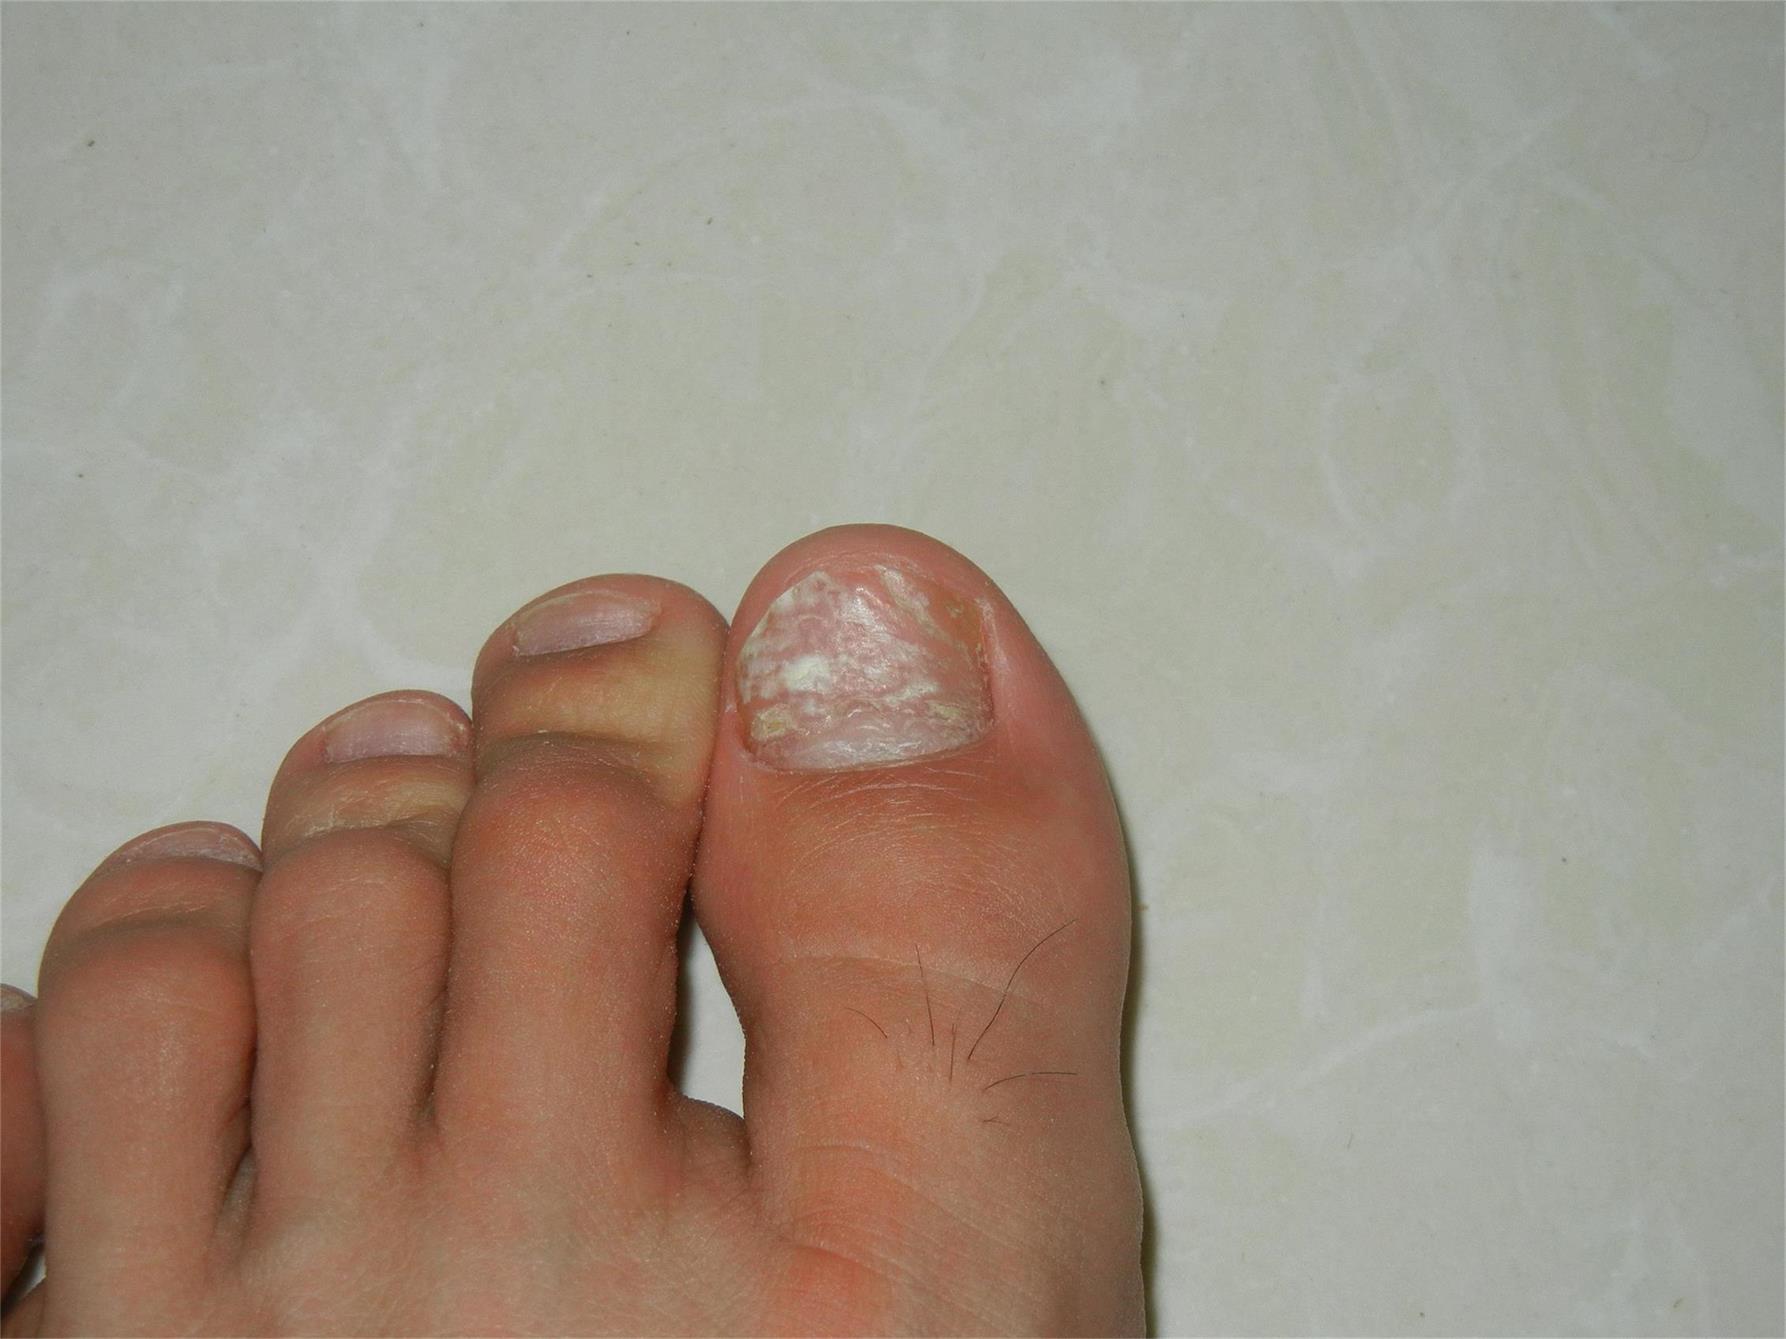 我的左脚大拇指指甲凹凸不平,并且有白斑,已经有半年了,其他脚